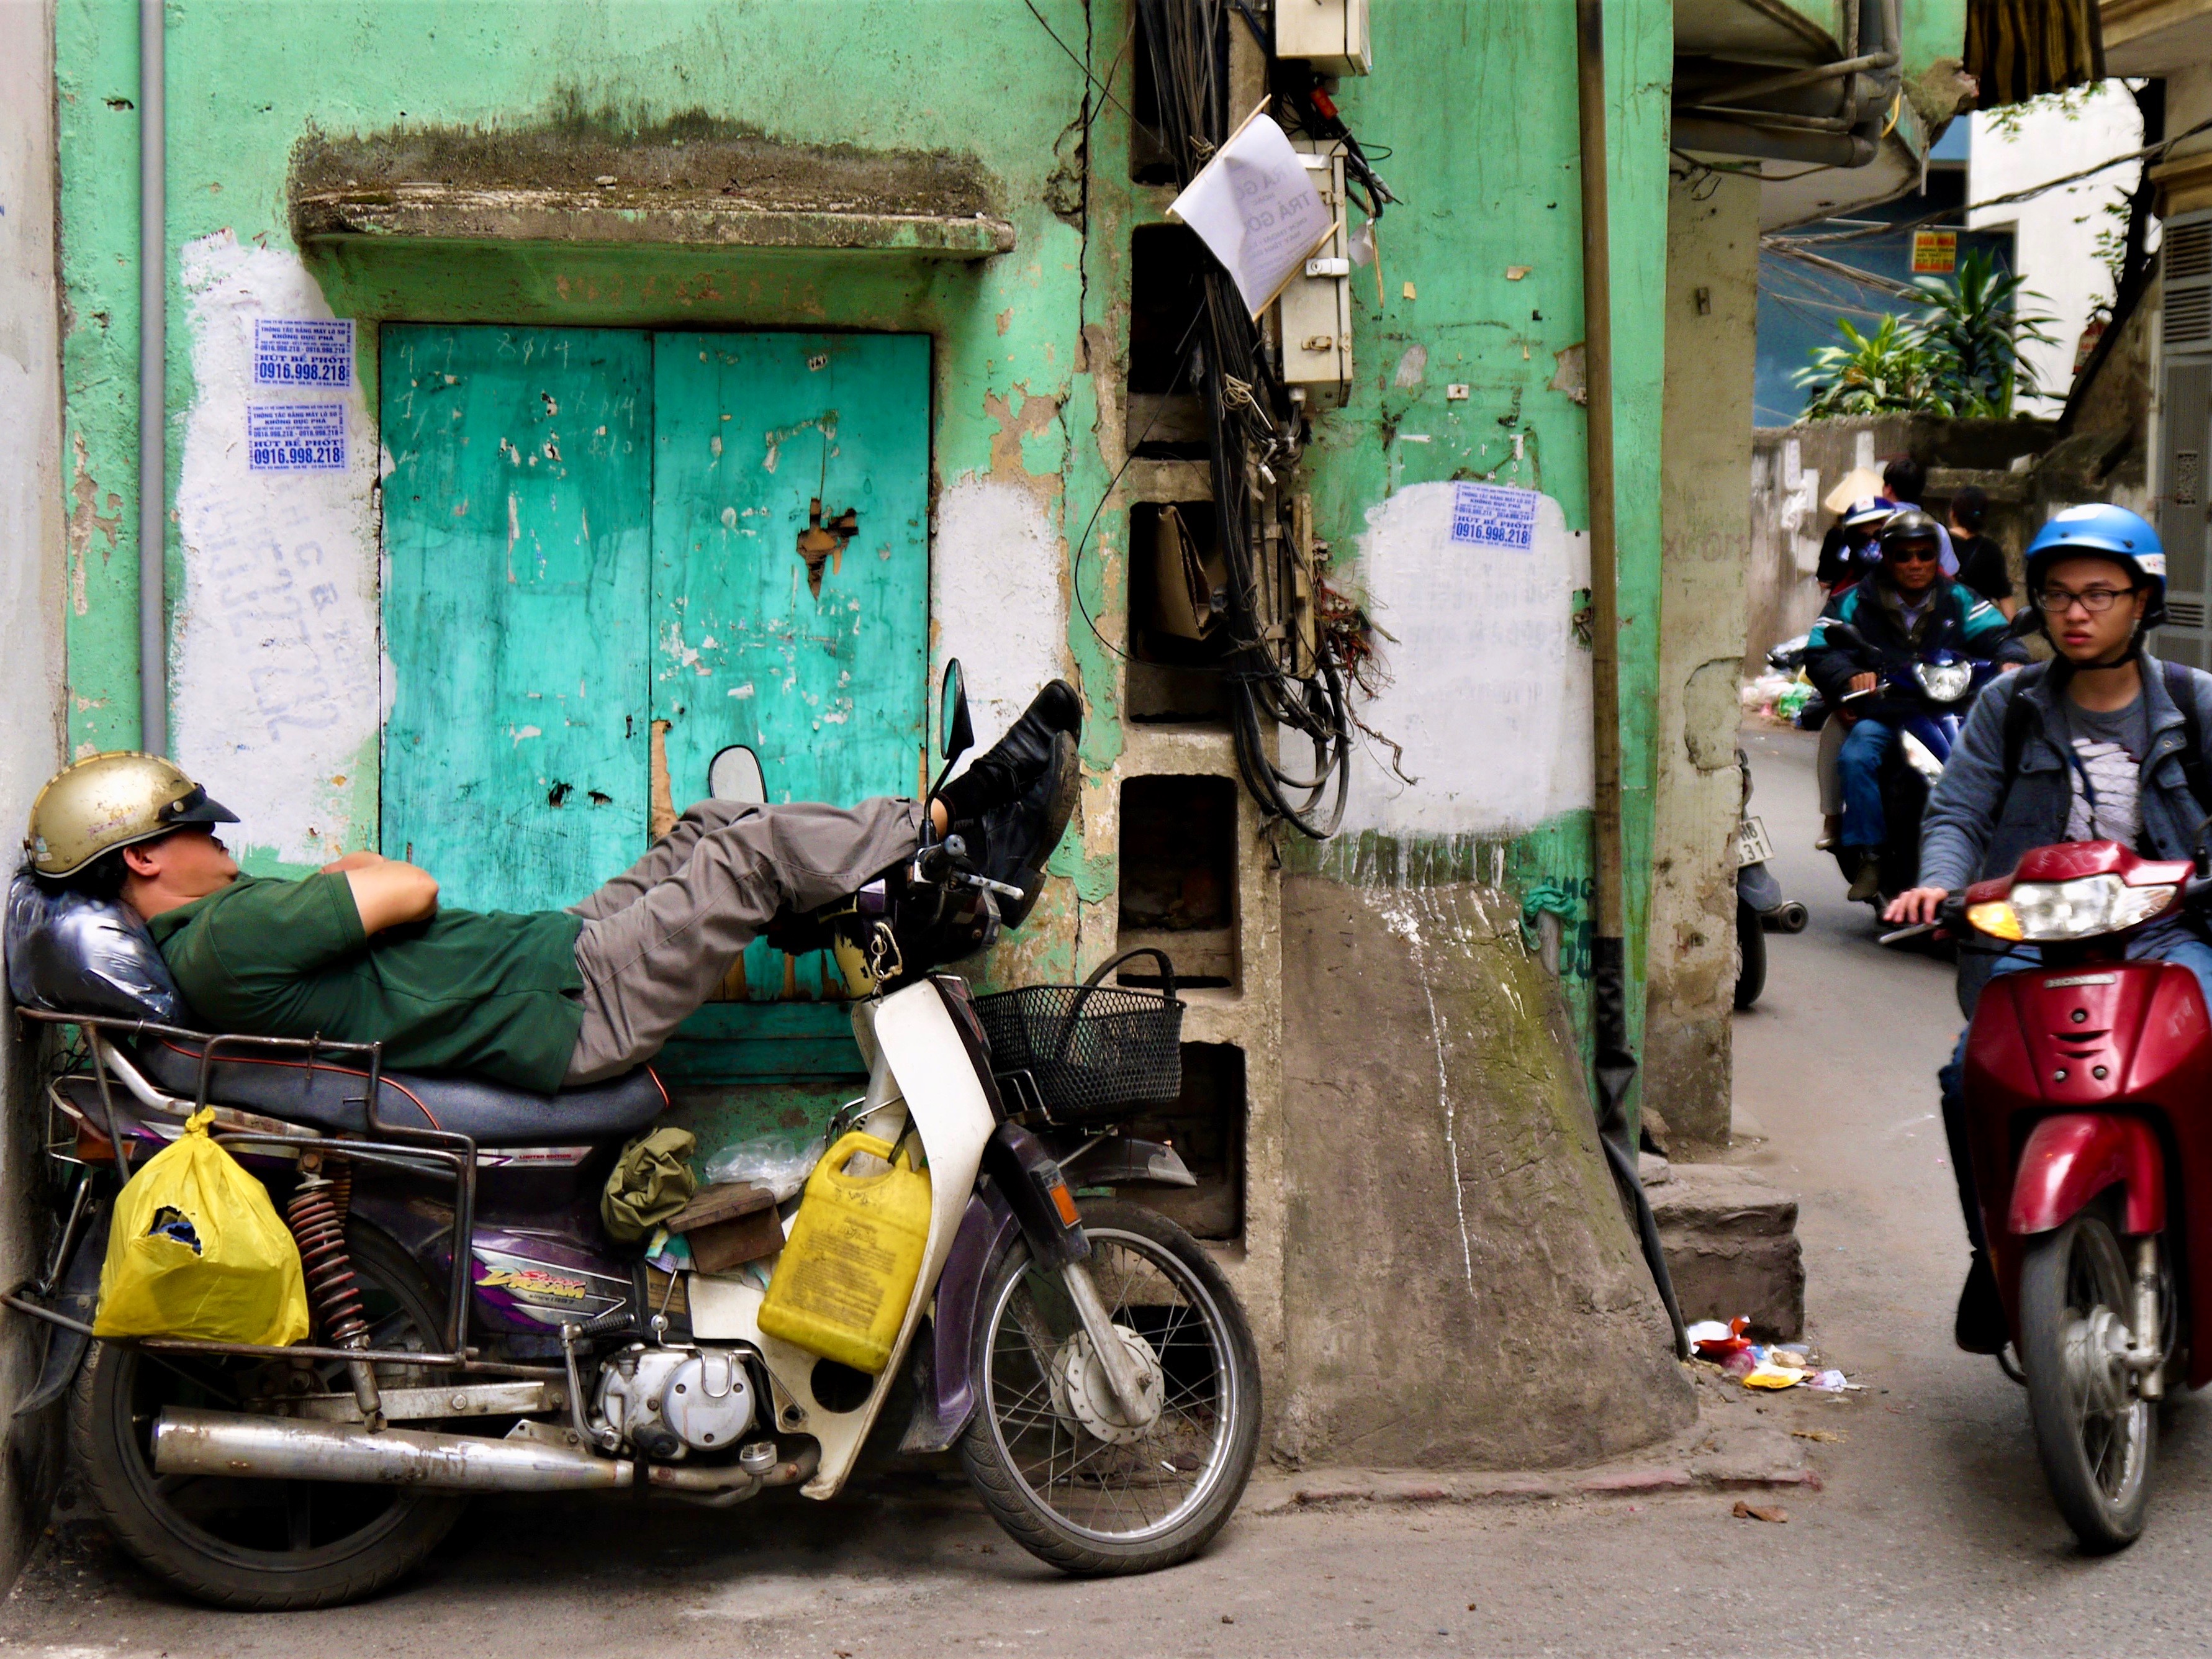 Man sleeping on motorbike in Hanoi